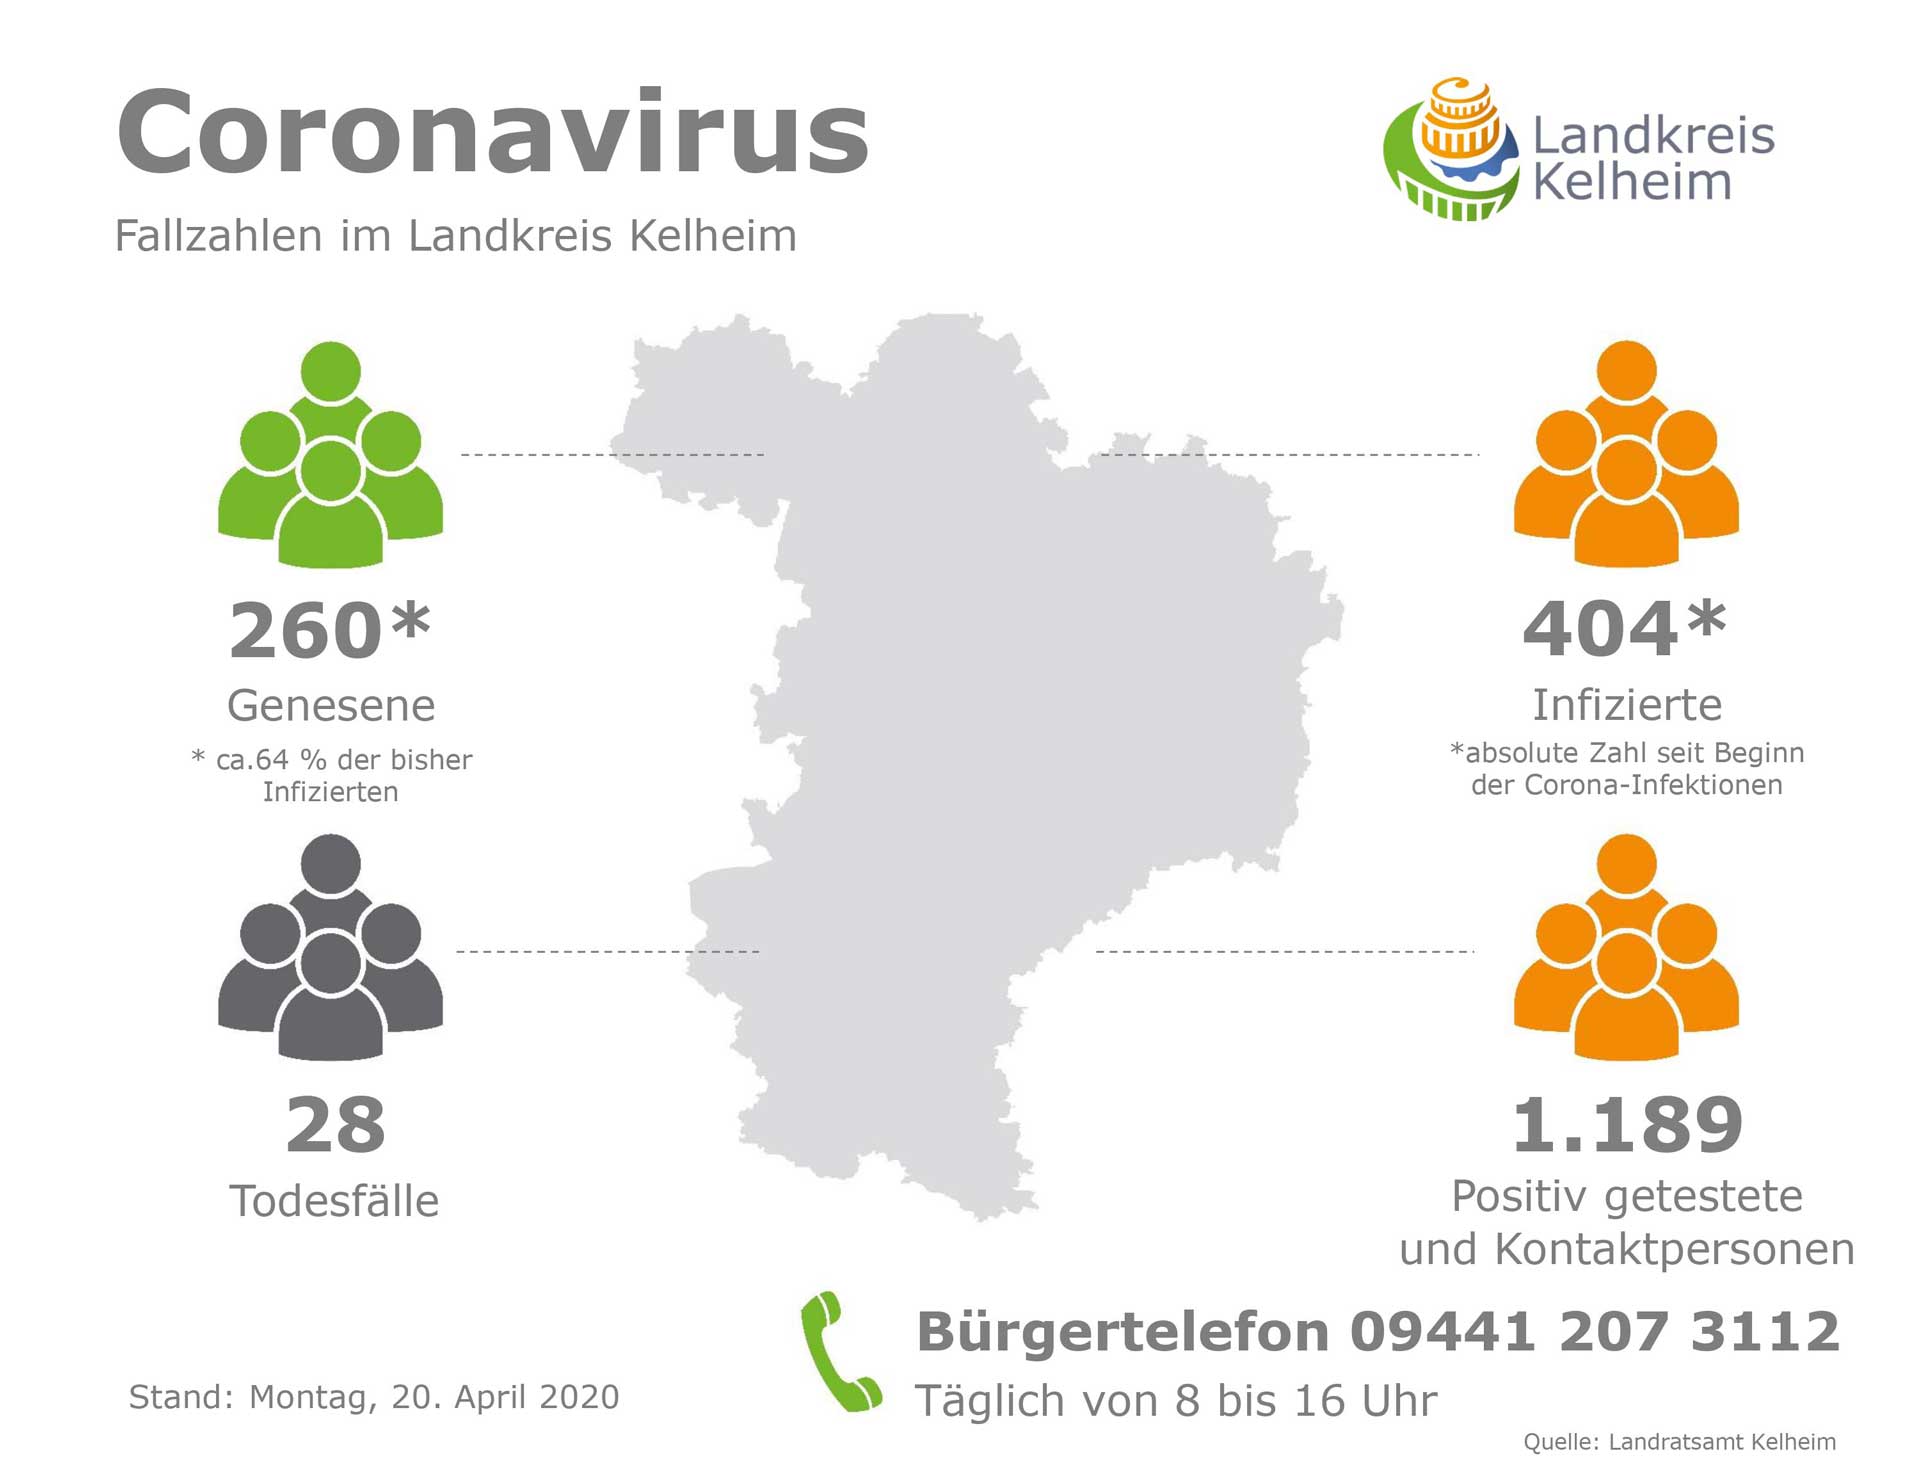 Übersicht der Coronafälle im Landkreis Kelheim Stand 20. 04. 2020 (Grafik: Landratsamt Kelheim)